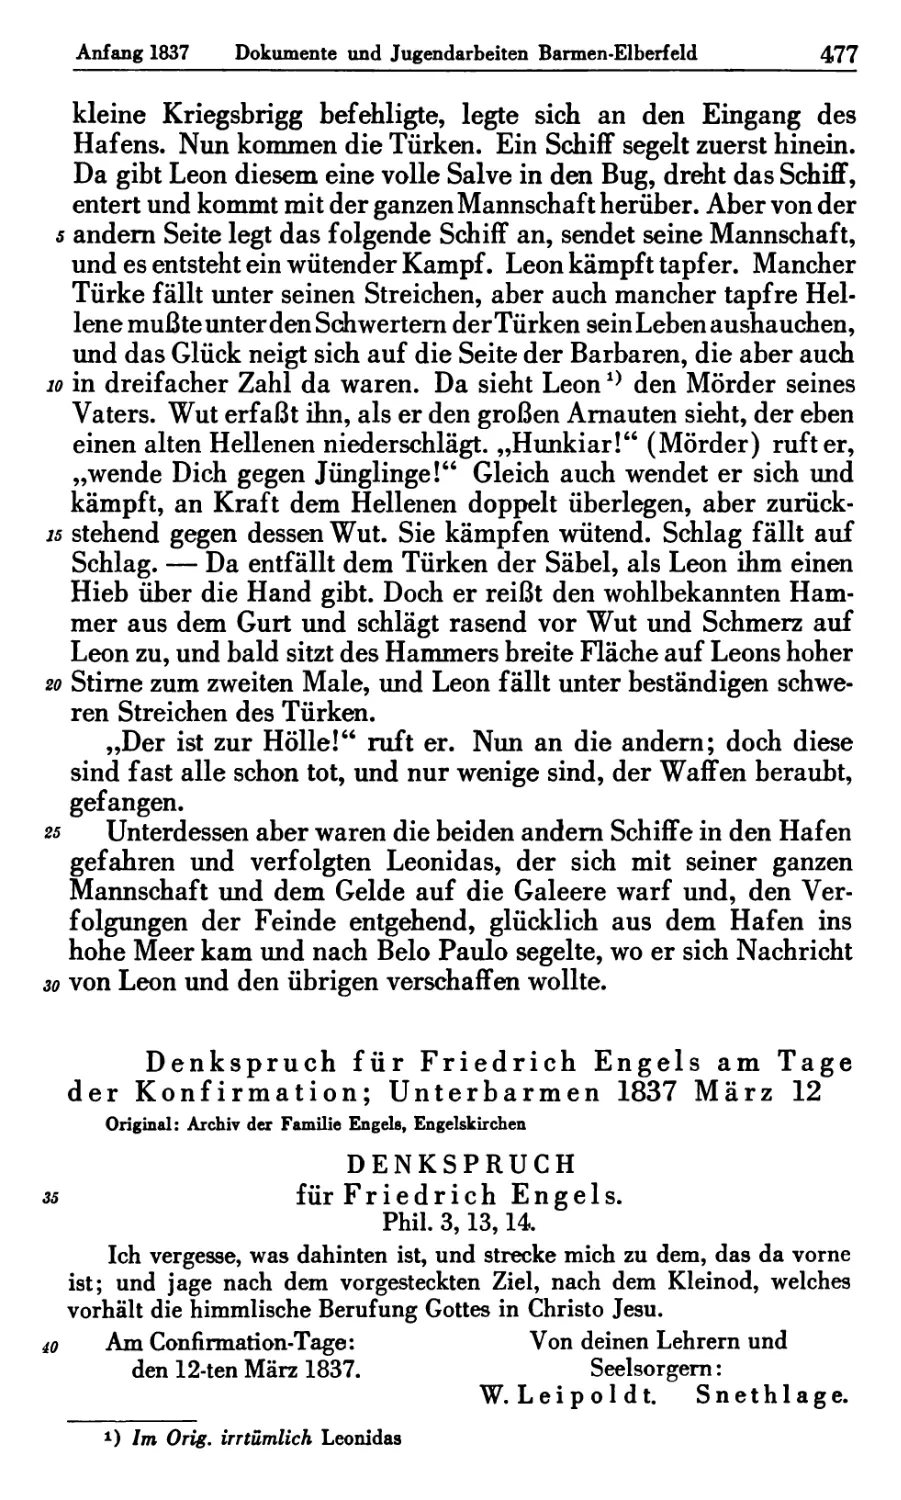 8. Denkspruch für Friedrich Engels am Tage der Konfirmation; Unterbarmen 1837 März 12